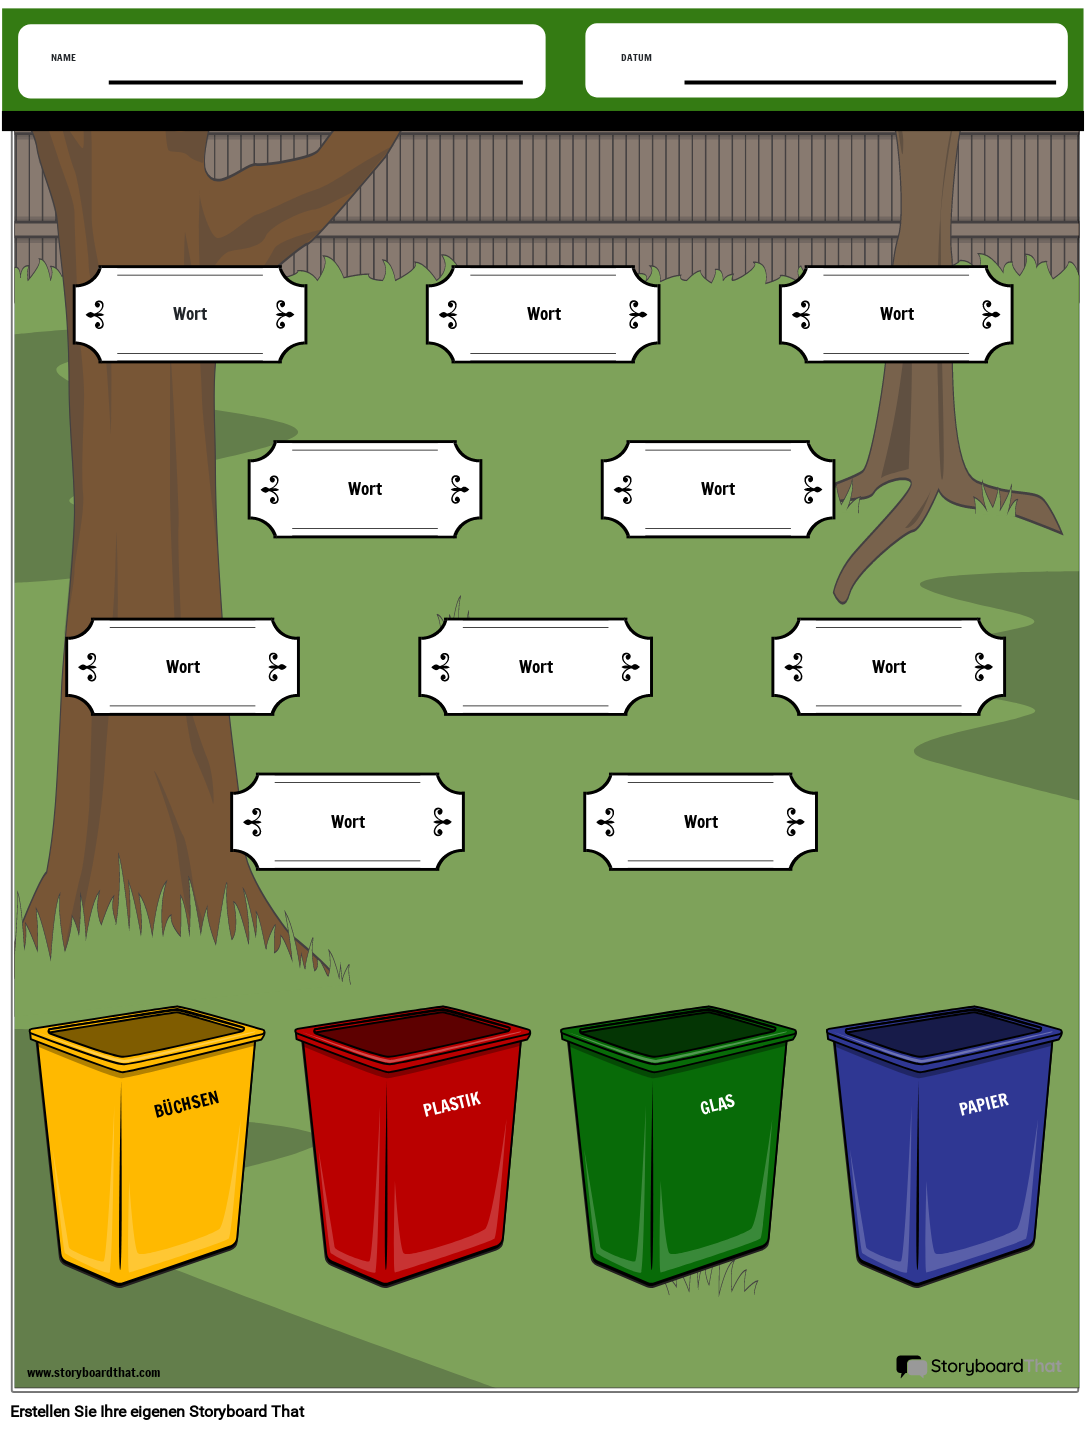 Arbeitsblatt zur Zuordnung von Recyclingbehältern